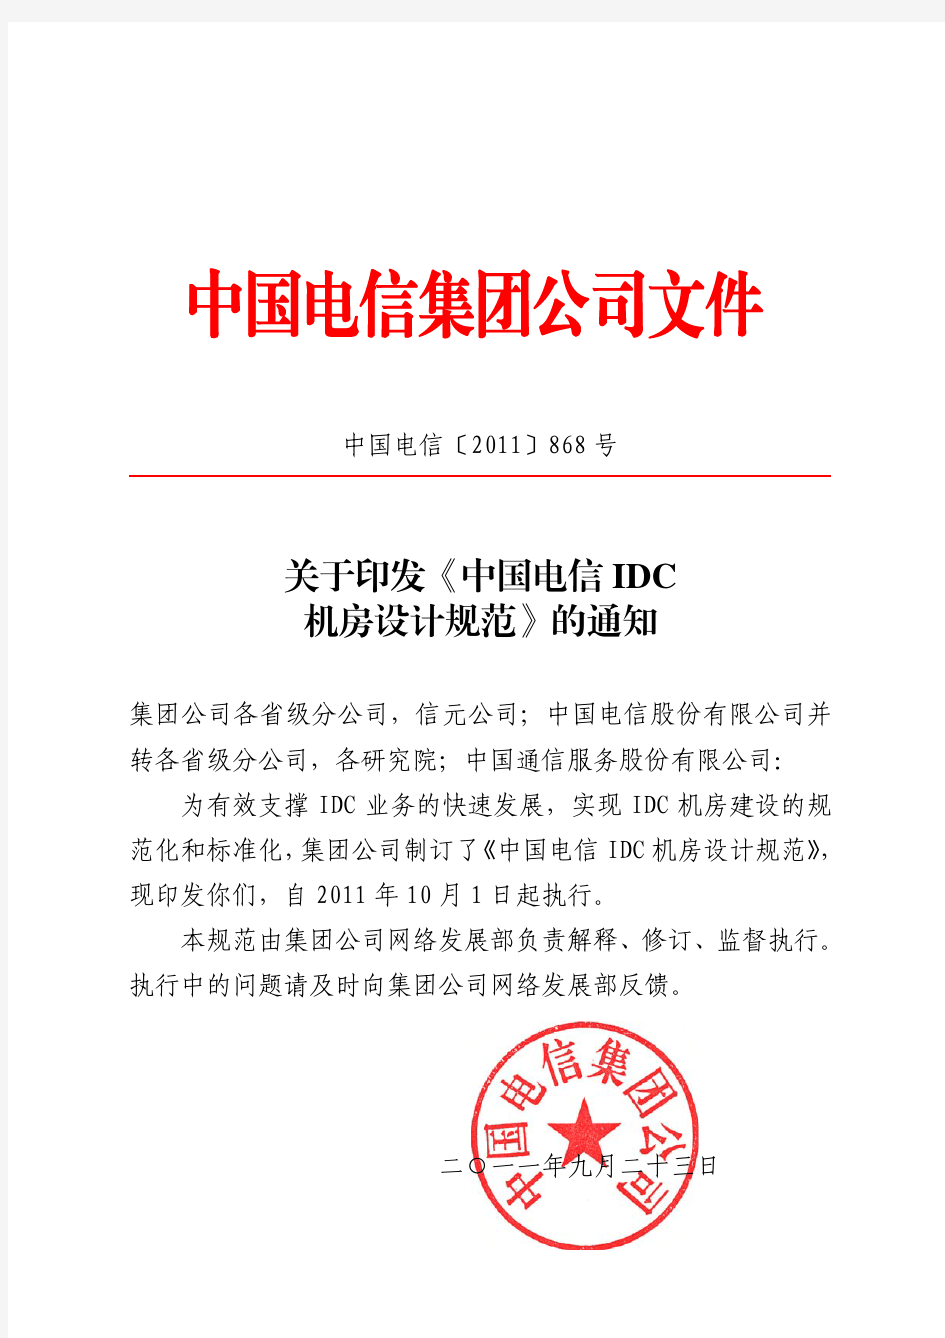 中国电信idc机房规范